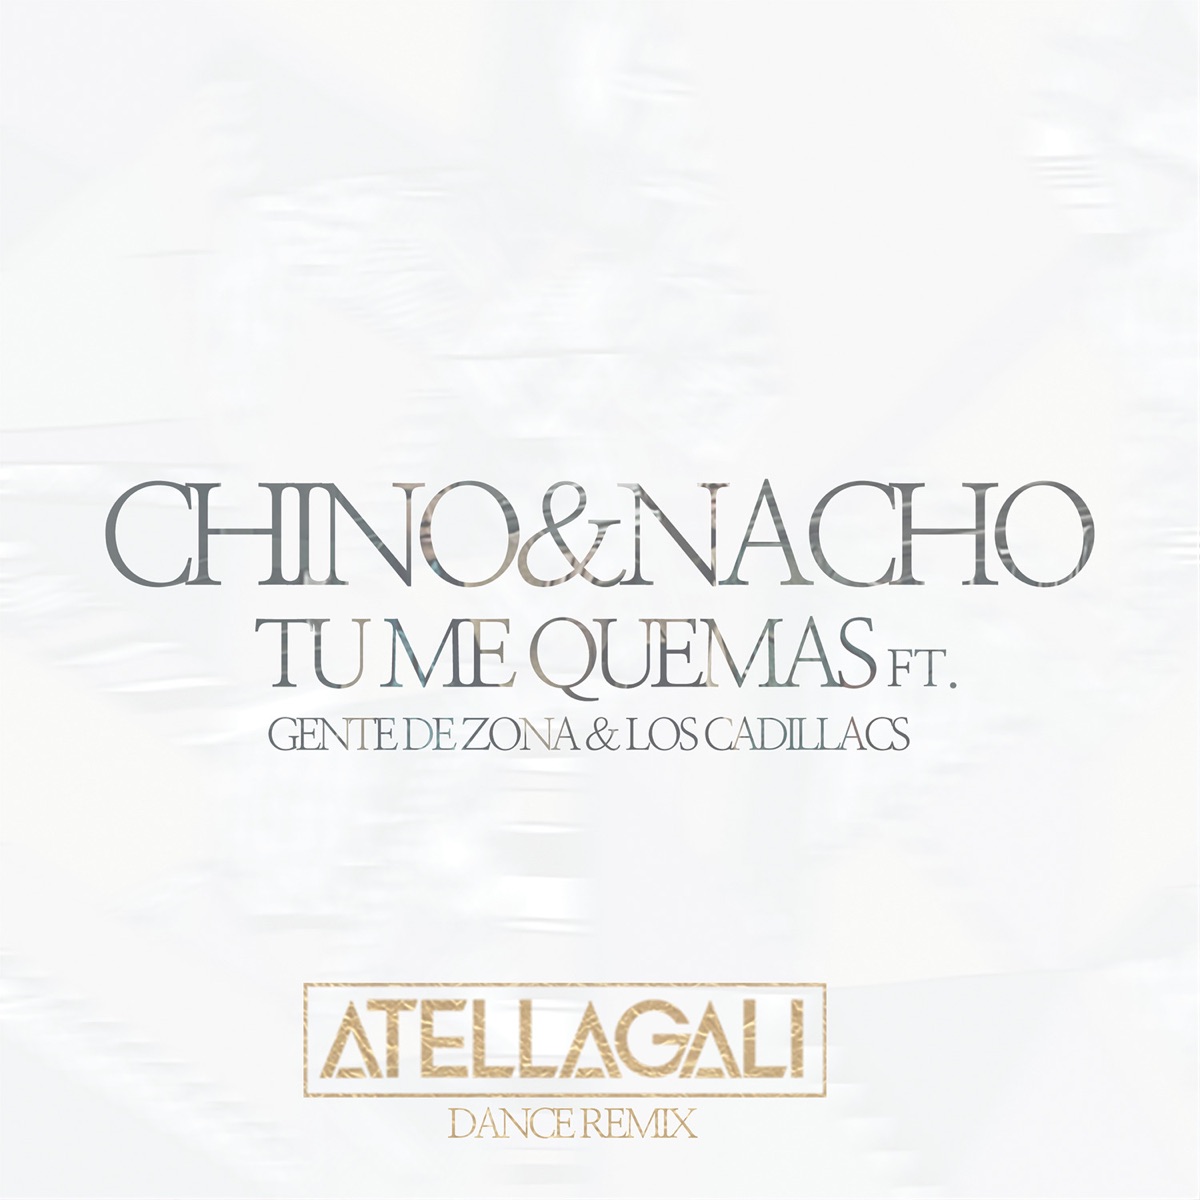 Tu Me Quemas (AtellaGali Dance Remix) [feat. Gente de Zona & Los Cadillacs]  - Single de Chino & Nacho en Apple Music